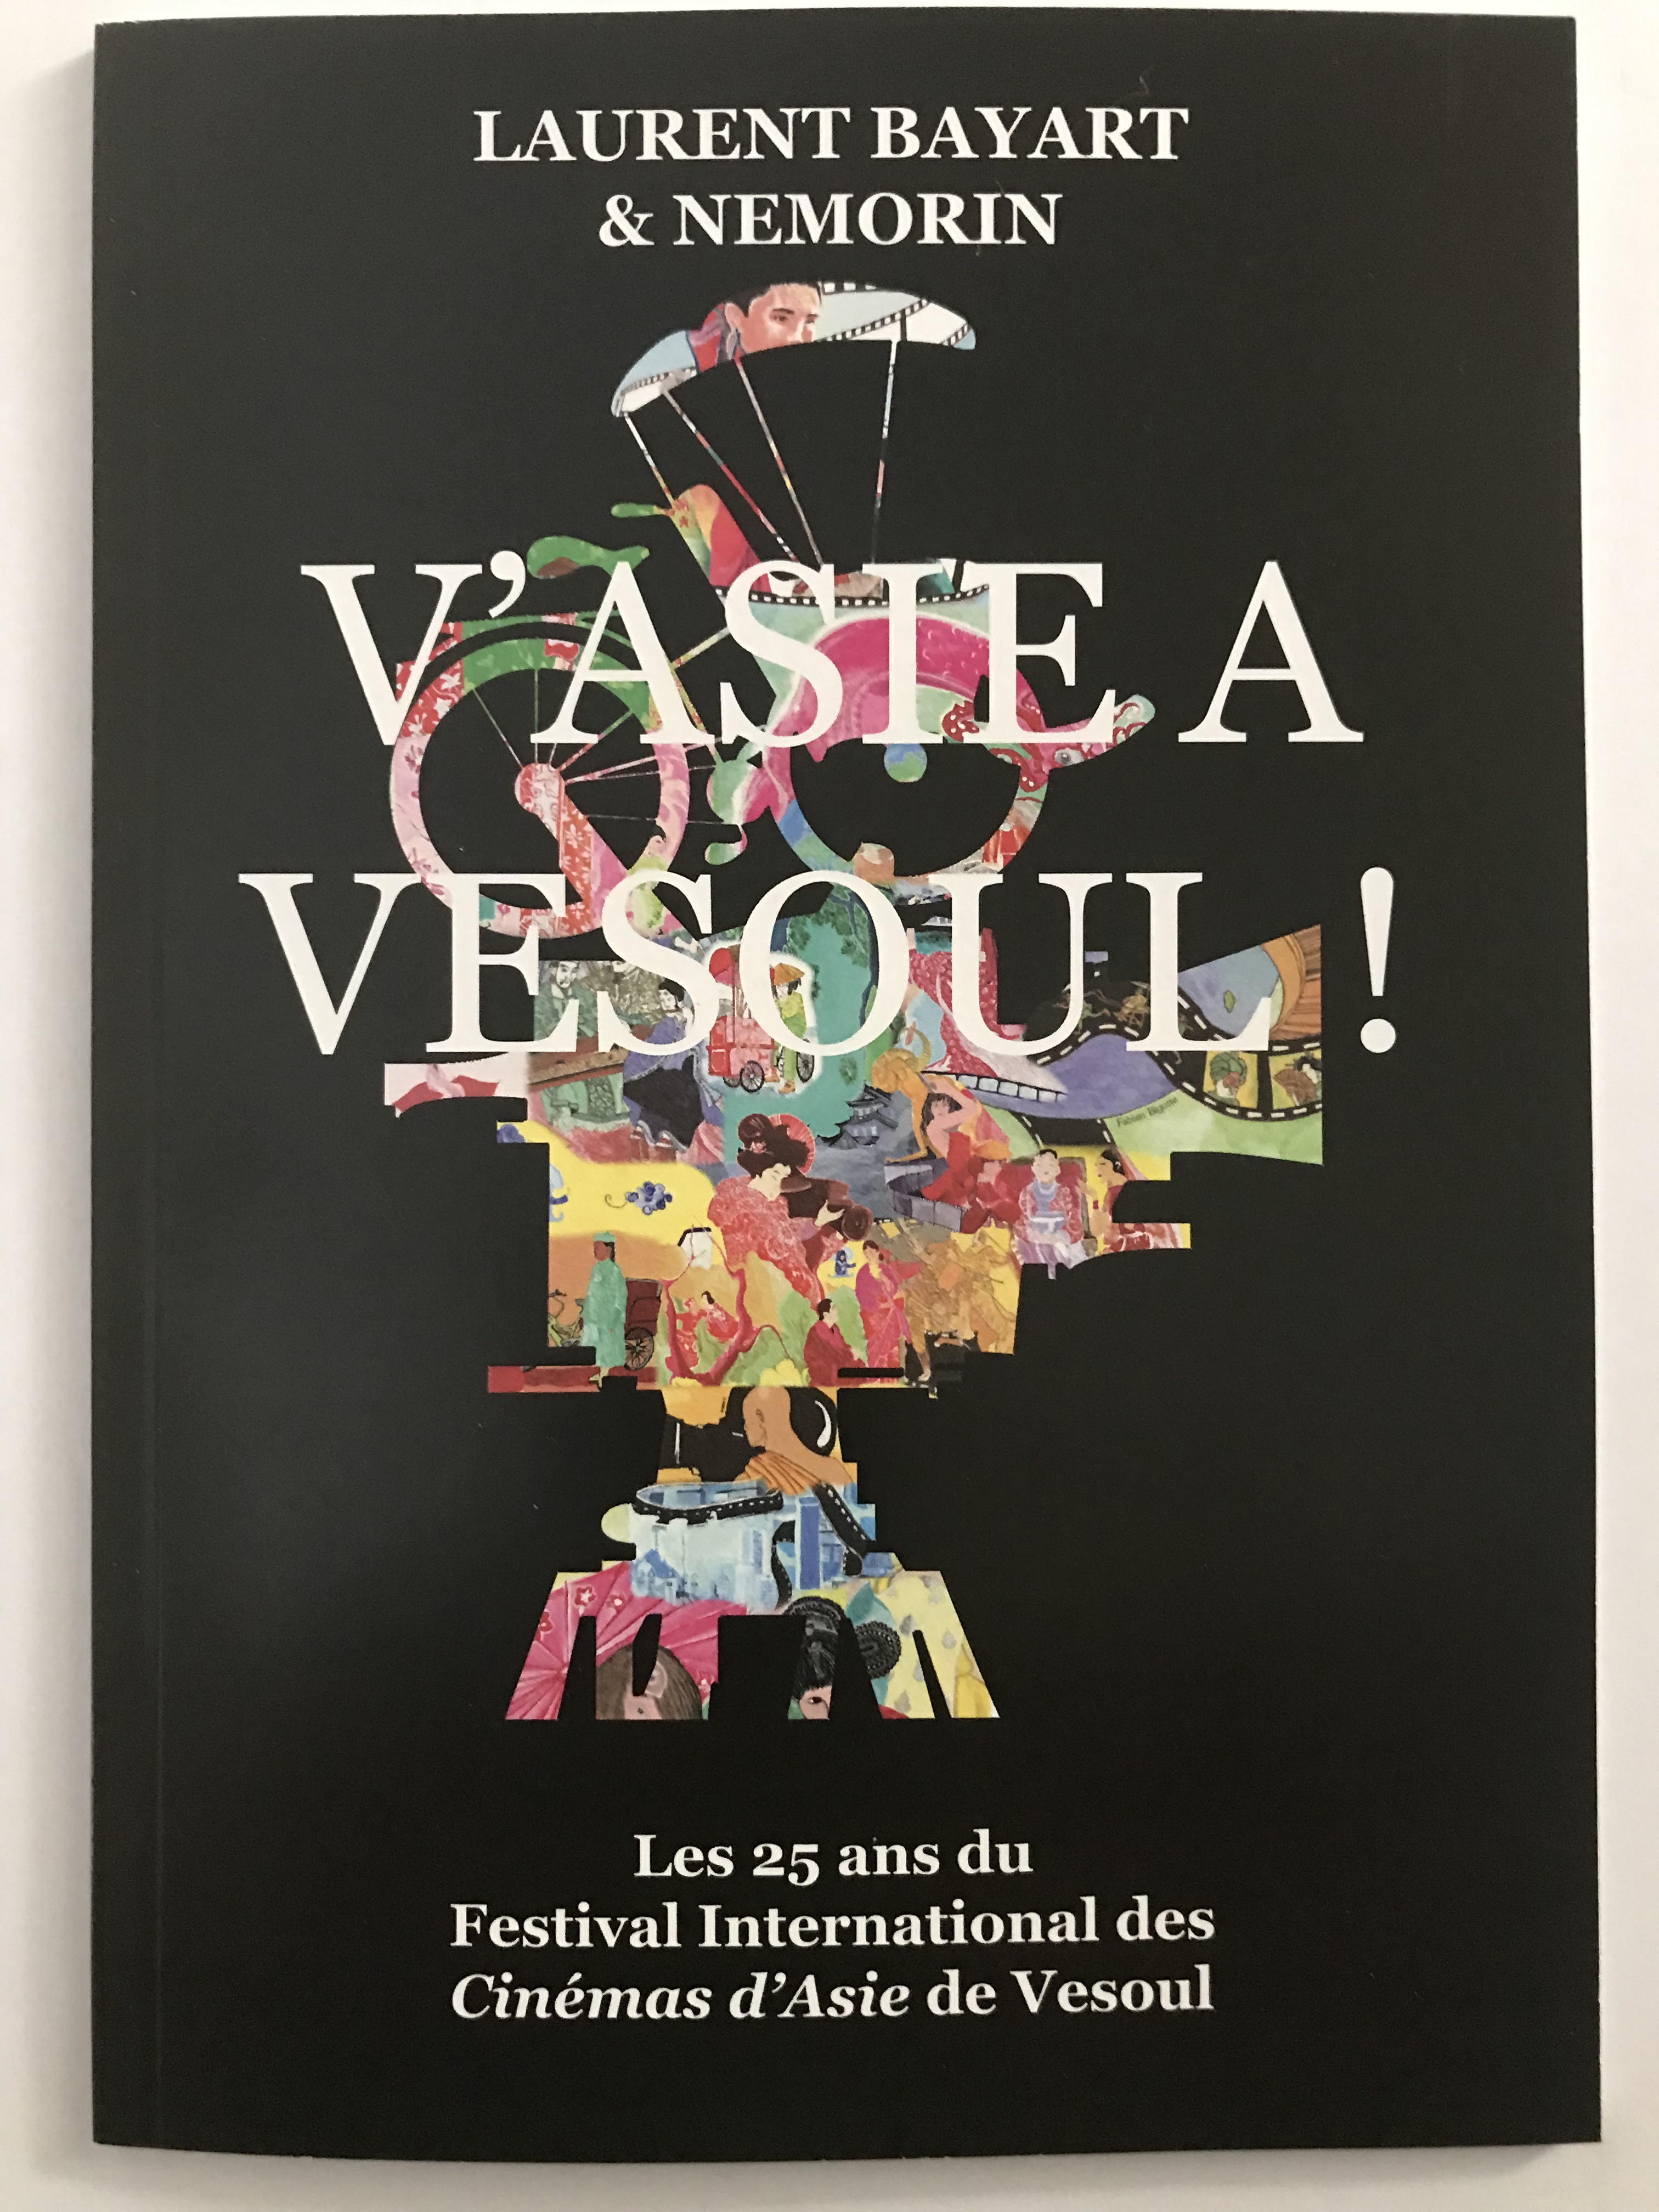 Les 25 ans du Festival International des Cinémas d’Asie de Vesoul